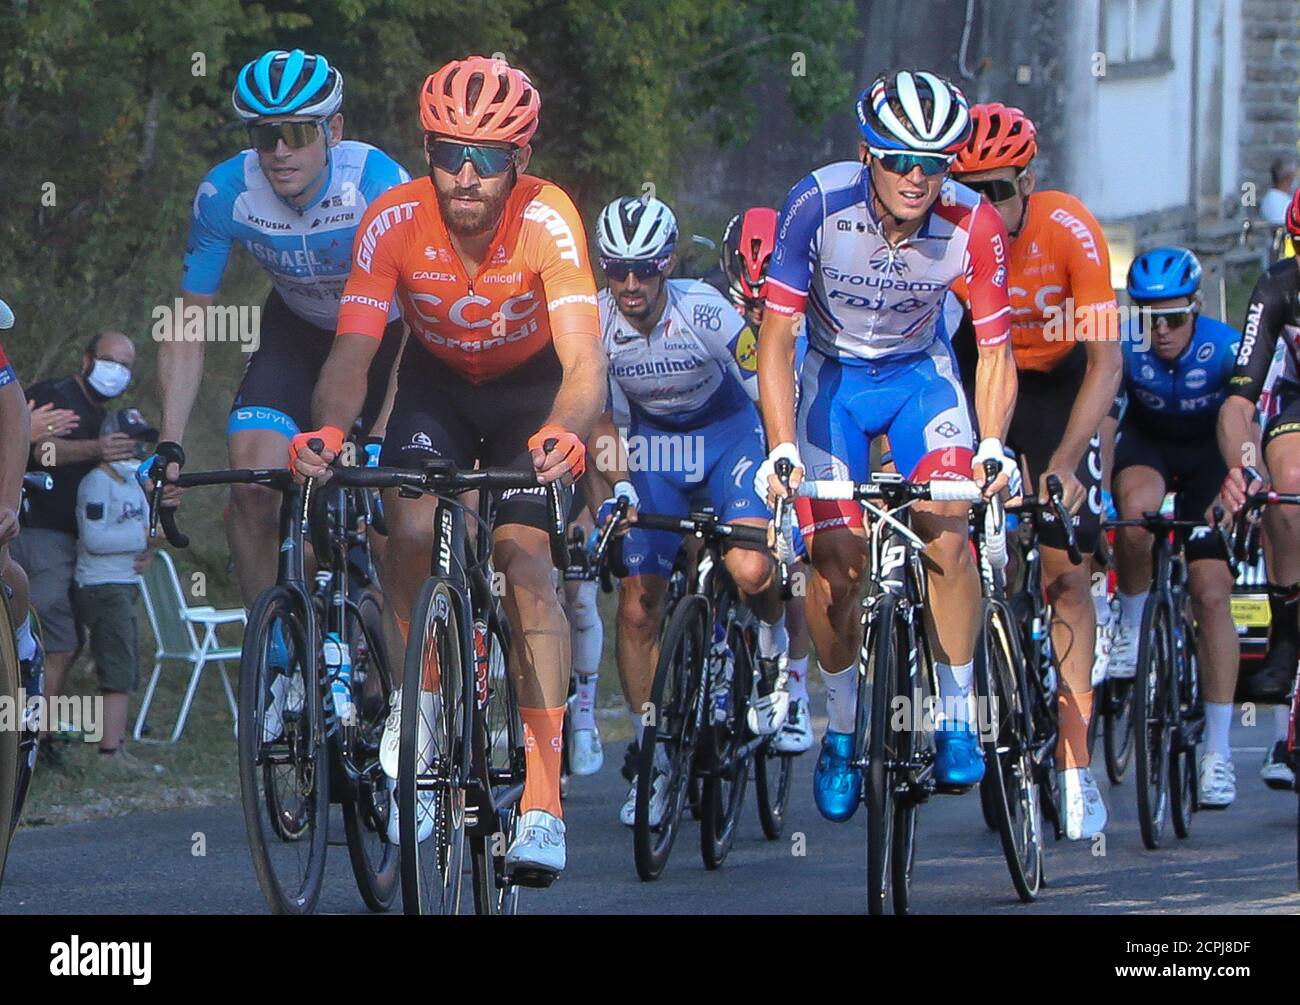 Simon Geschke vom CCC Team und Valentin Maduas von Groupama - FDJ während der Tour de France 2020, Radrennen Etappe 19, Bourg en Bresse - Champagnole Stockfoto